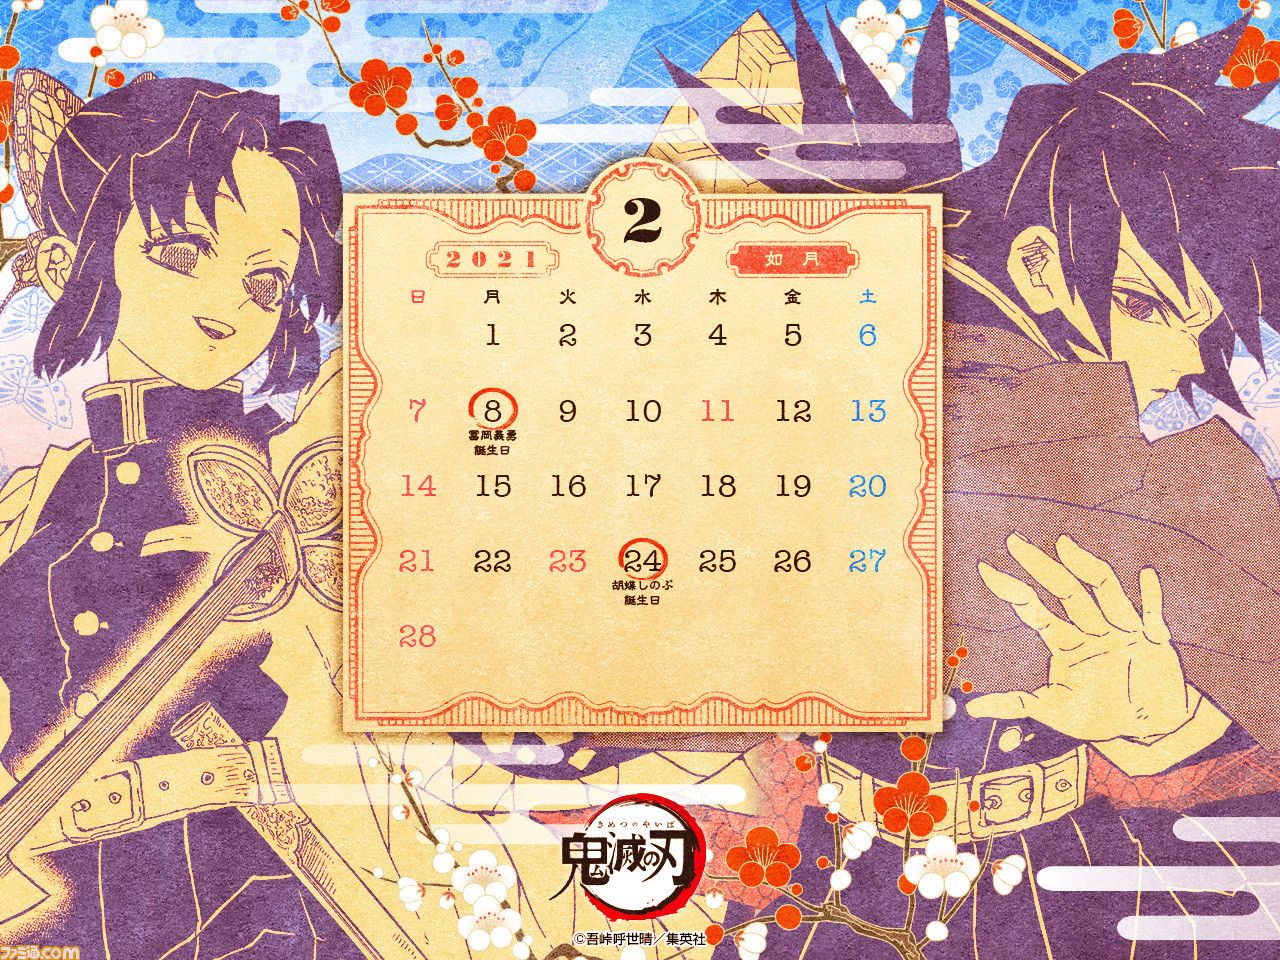 鬼滅の刃 カレンダーとして使える壁紙画像を配布 2月に誕生日を迎えるのは冨岡義勇と胡蝶しのぶ ゲーム エンタメ最新情報のファミ通 Com